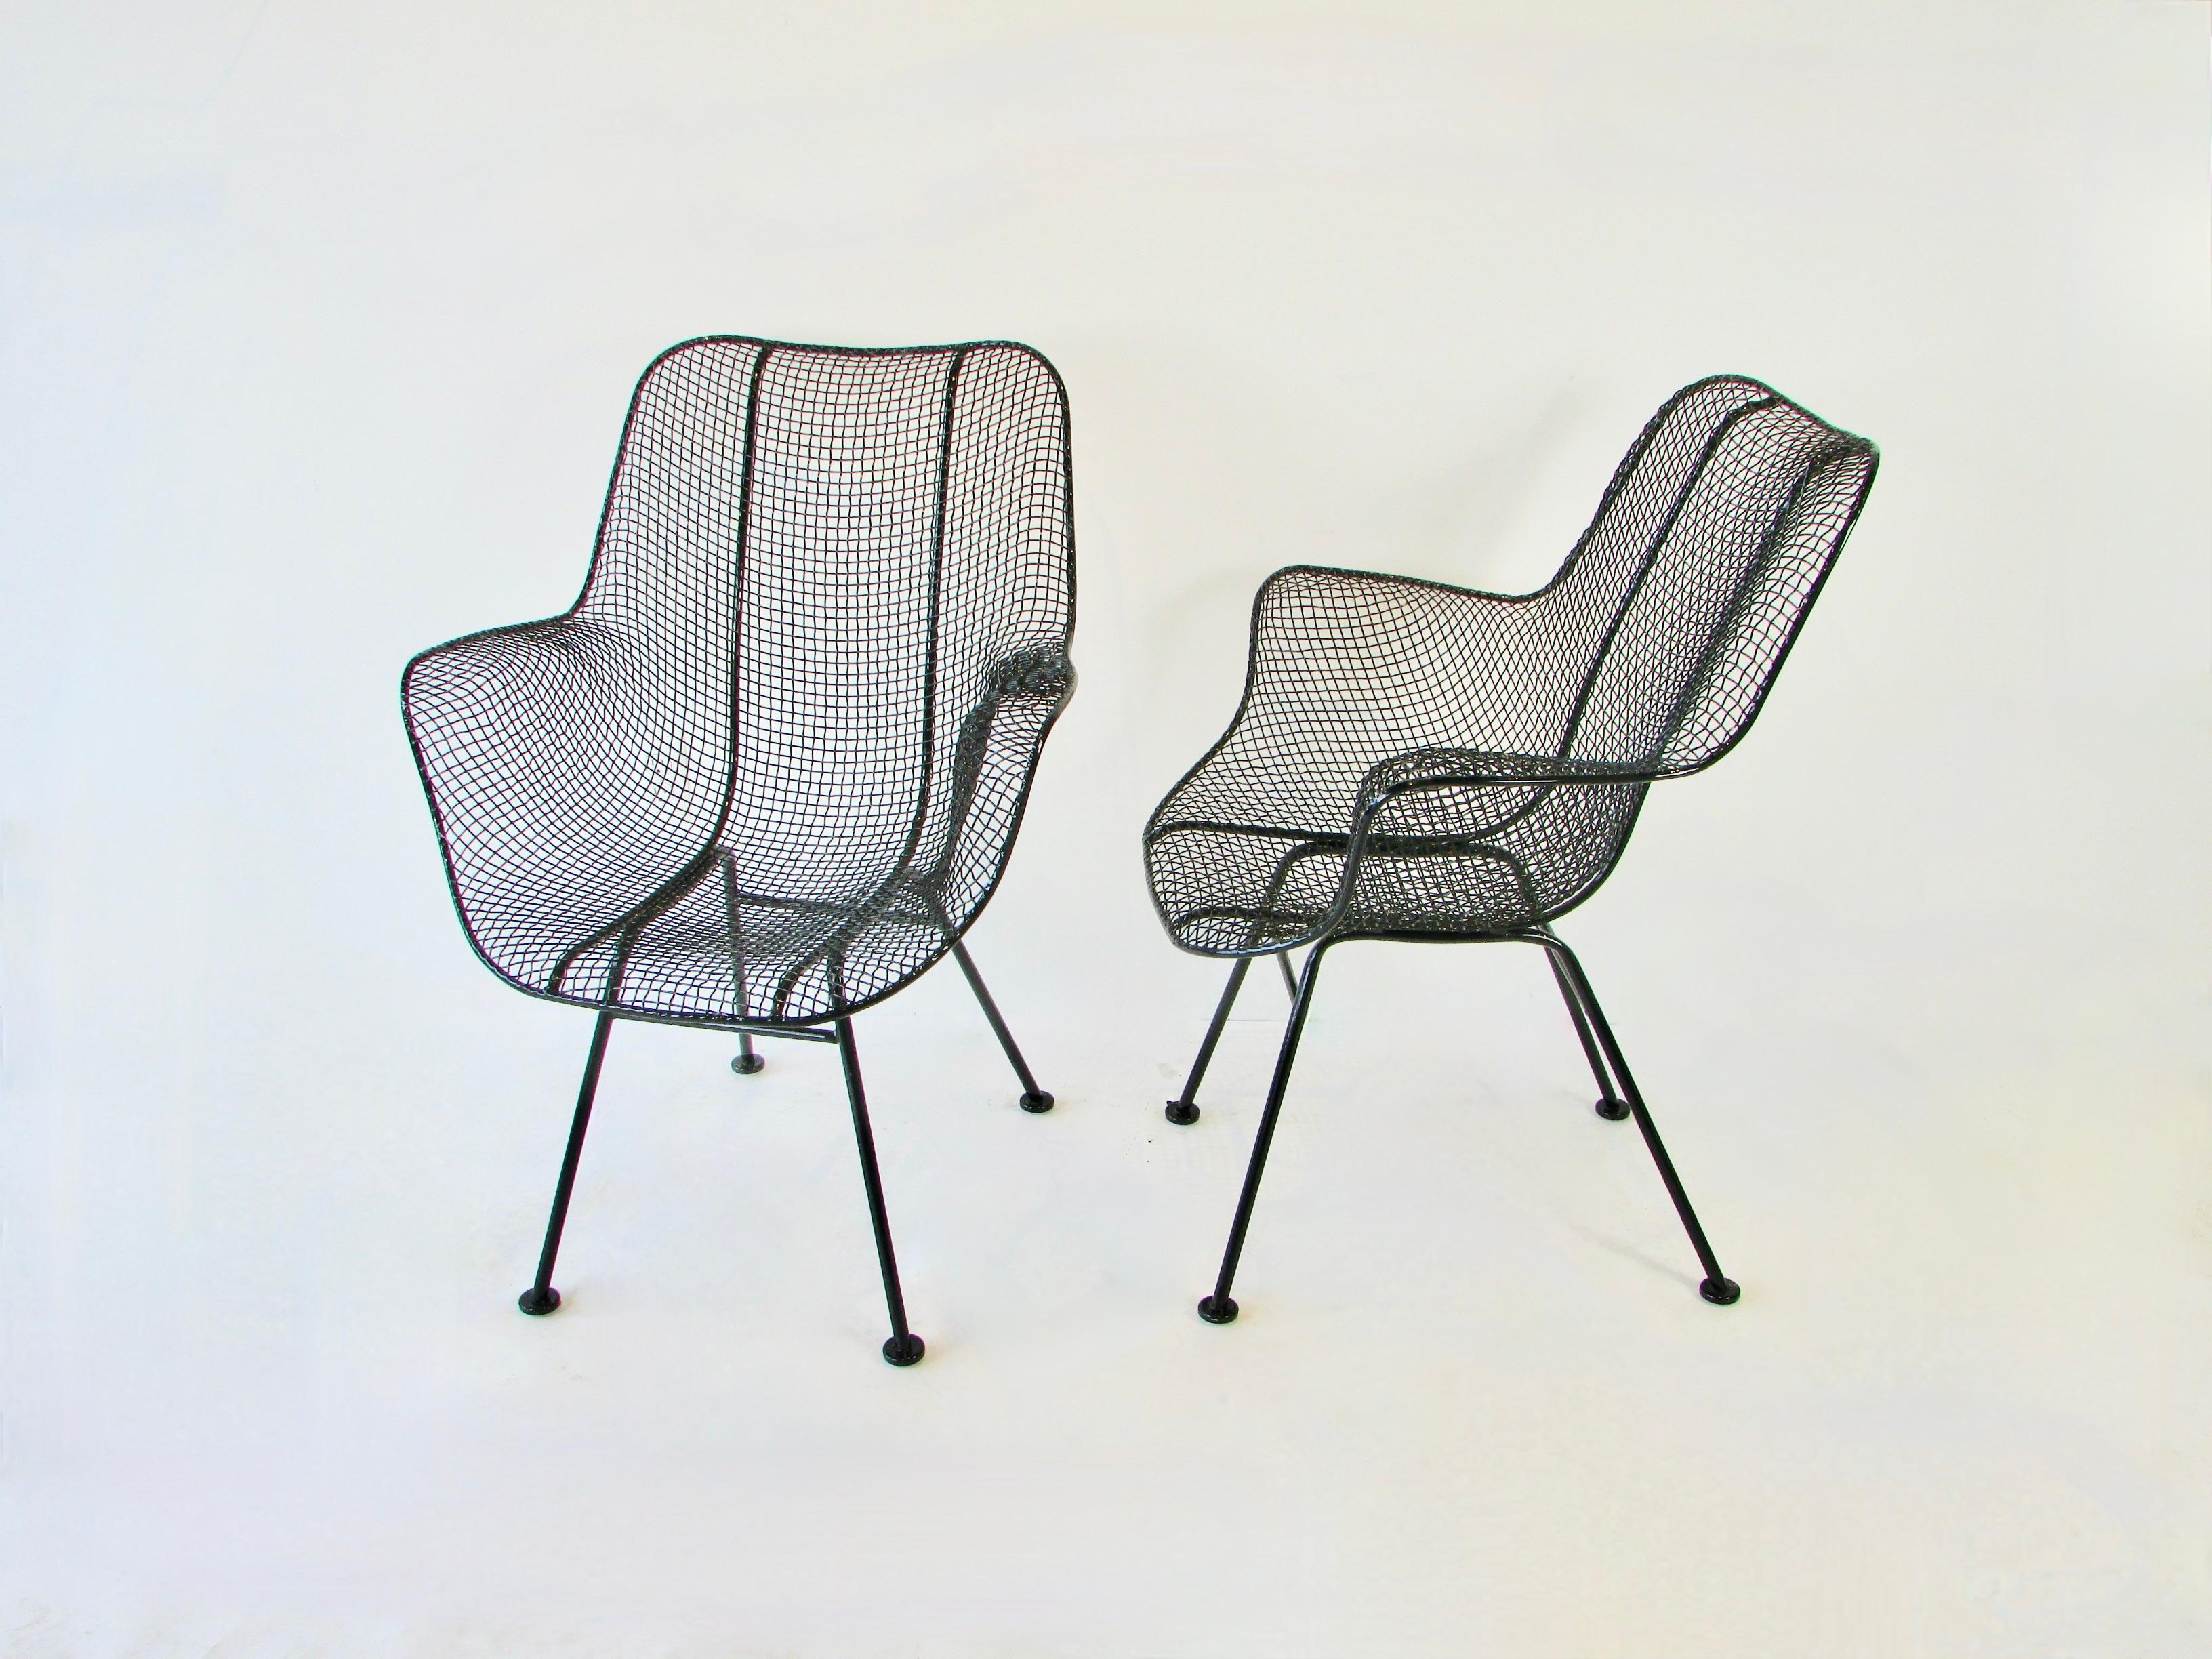 Ein Paar Woodard-Stühle mit hoher Rückenlehne aus der Serie sculptura. Beide Stühle wurden gereinigt und in glänzendem Schwarz pulverbeschichtet. An allen Füßen wurden neue Gleiter angebracht.